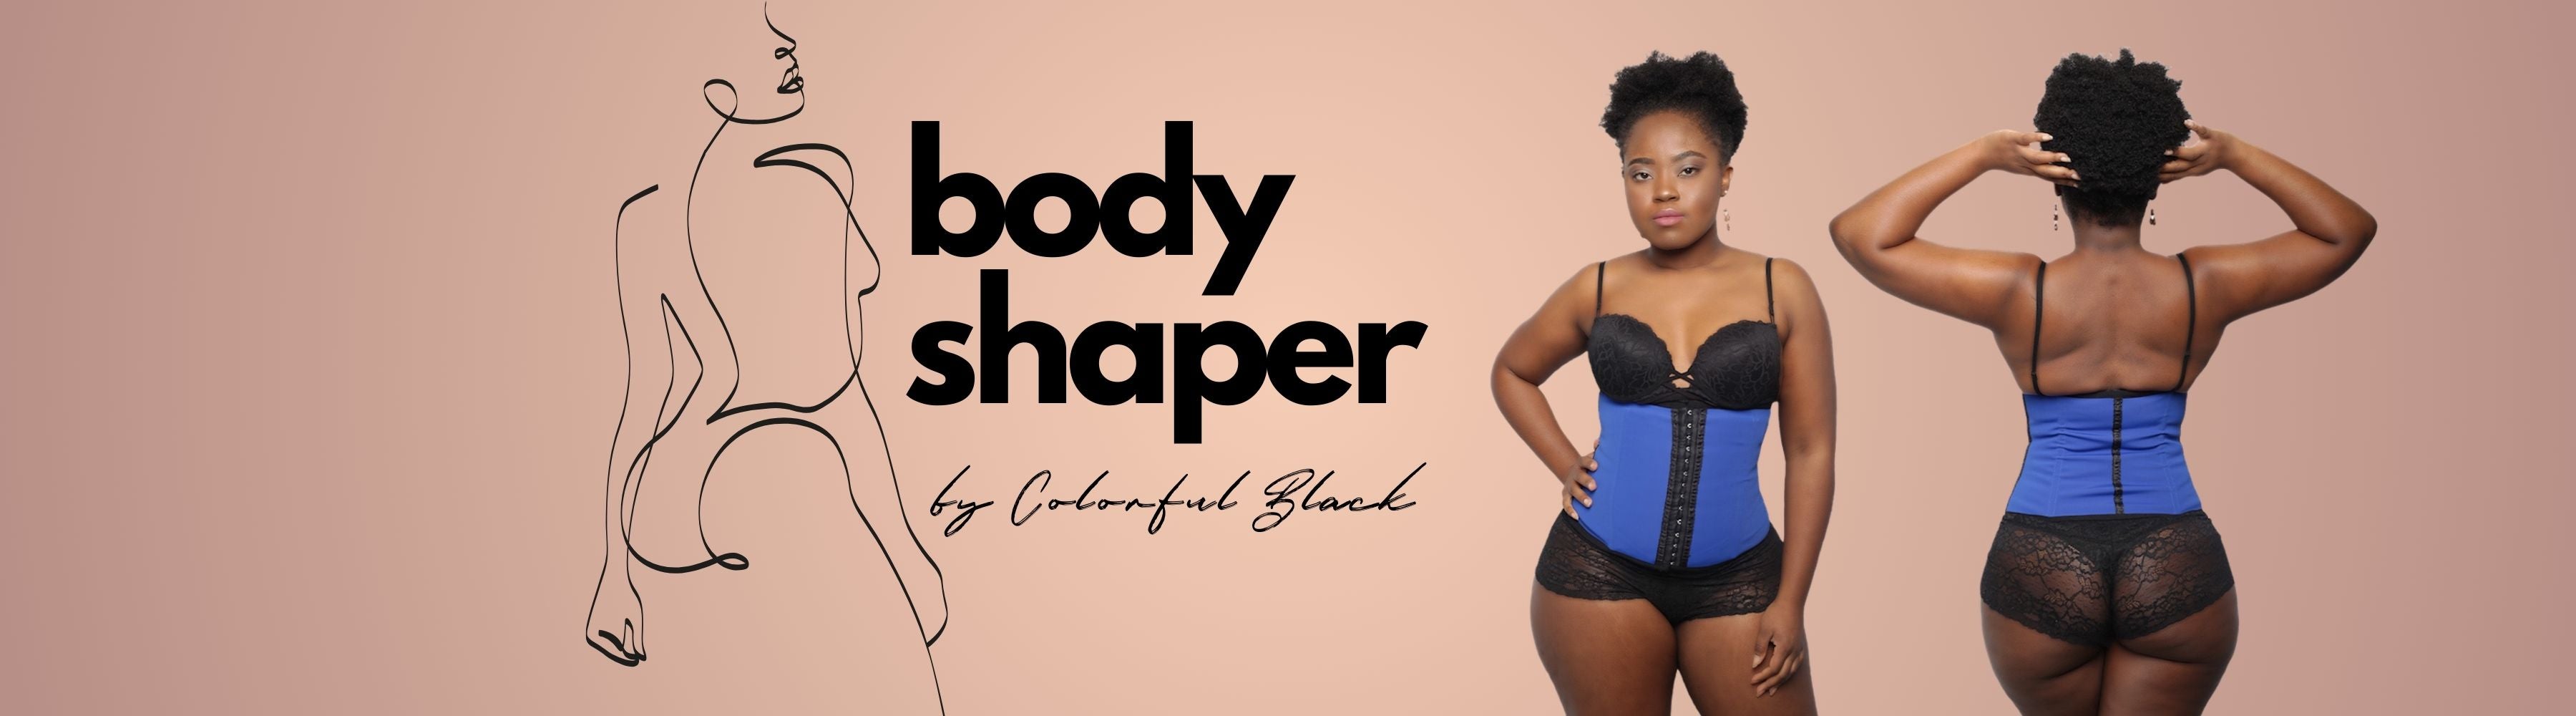 Body Shaper - Vêtements gainants fabriqués en Colombie (fajas